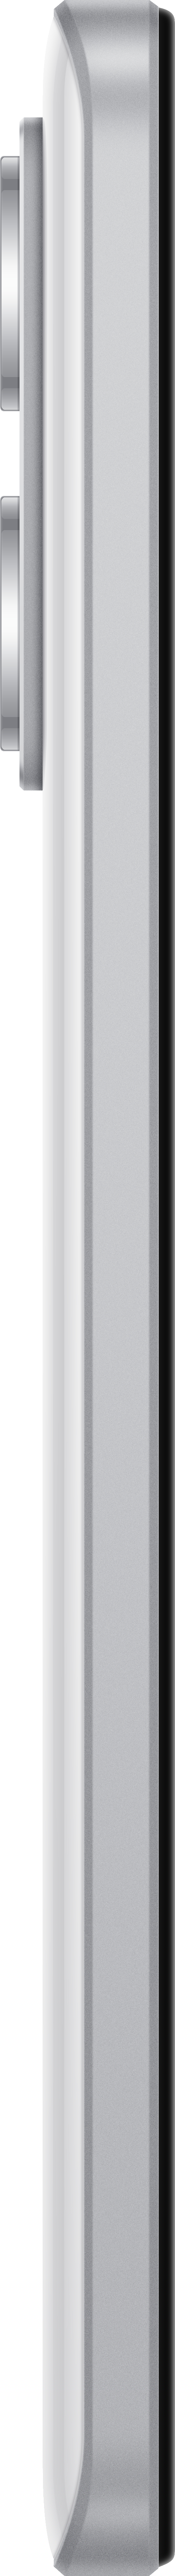 Redmi Dual GB Note White 5G XIAOMI SIM 12 Pro+ 256 Polar